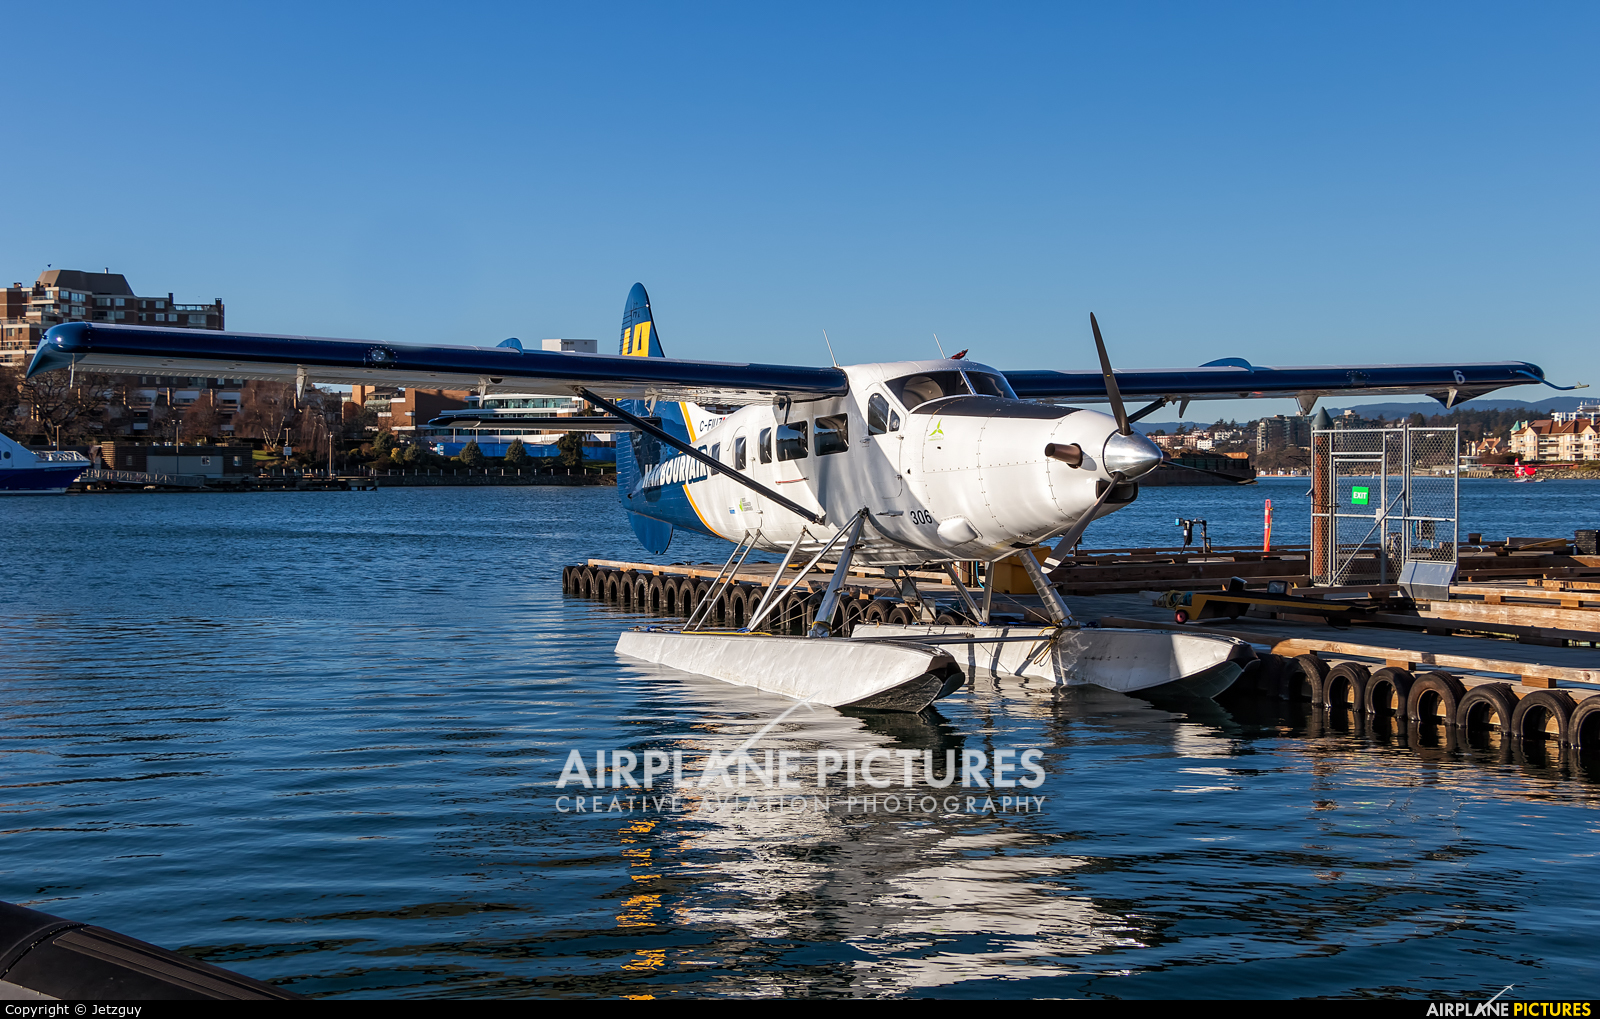 Harbour Air C-FIUZ aircraft at Victoria Harbour, BC